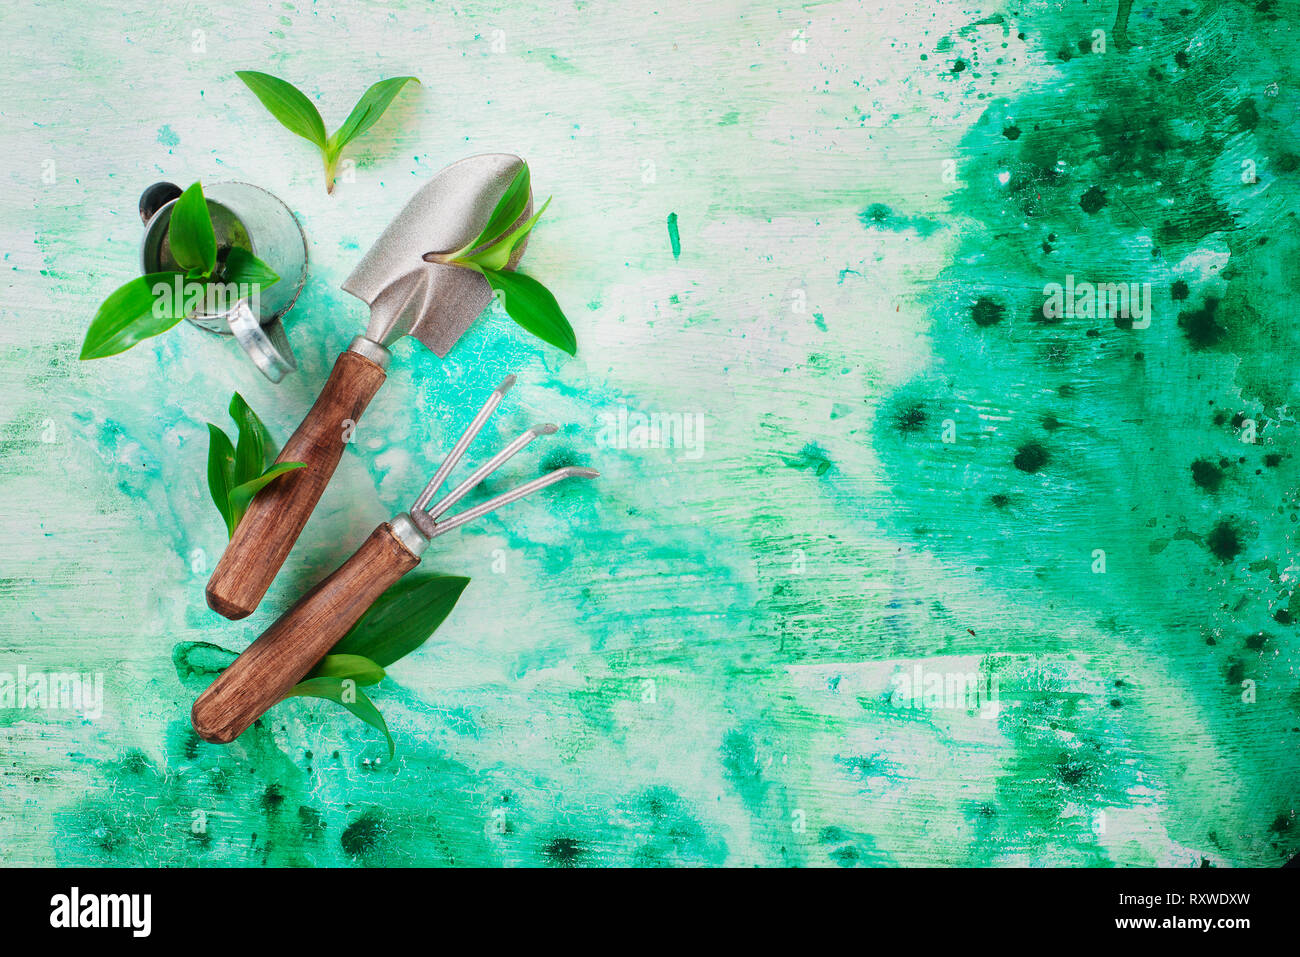 Herramientas de jardinería con hojas verdes sobre un fondo de acuarela con espacio de copia Foto de stock